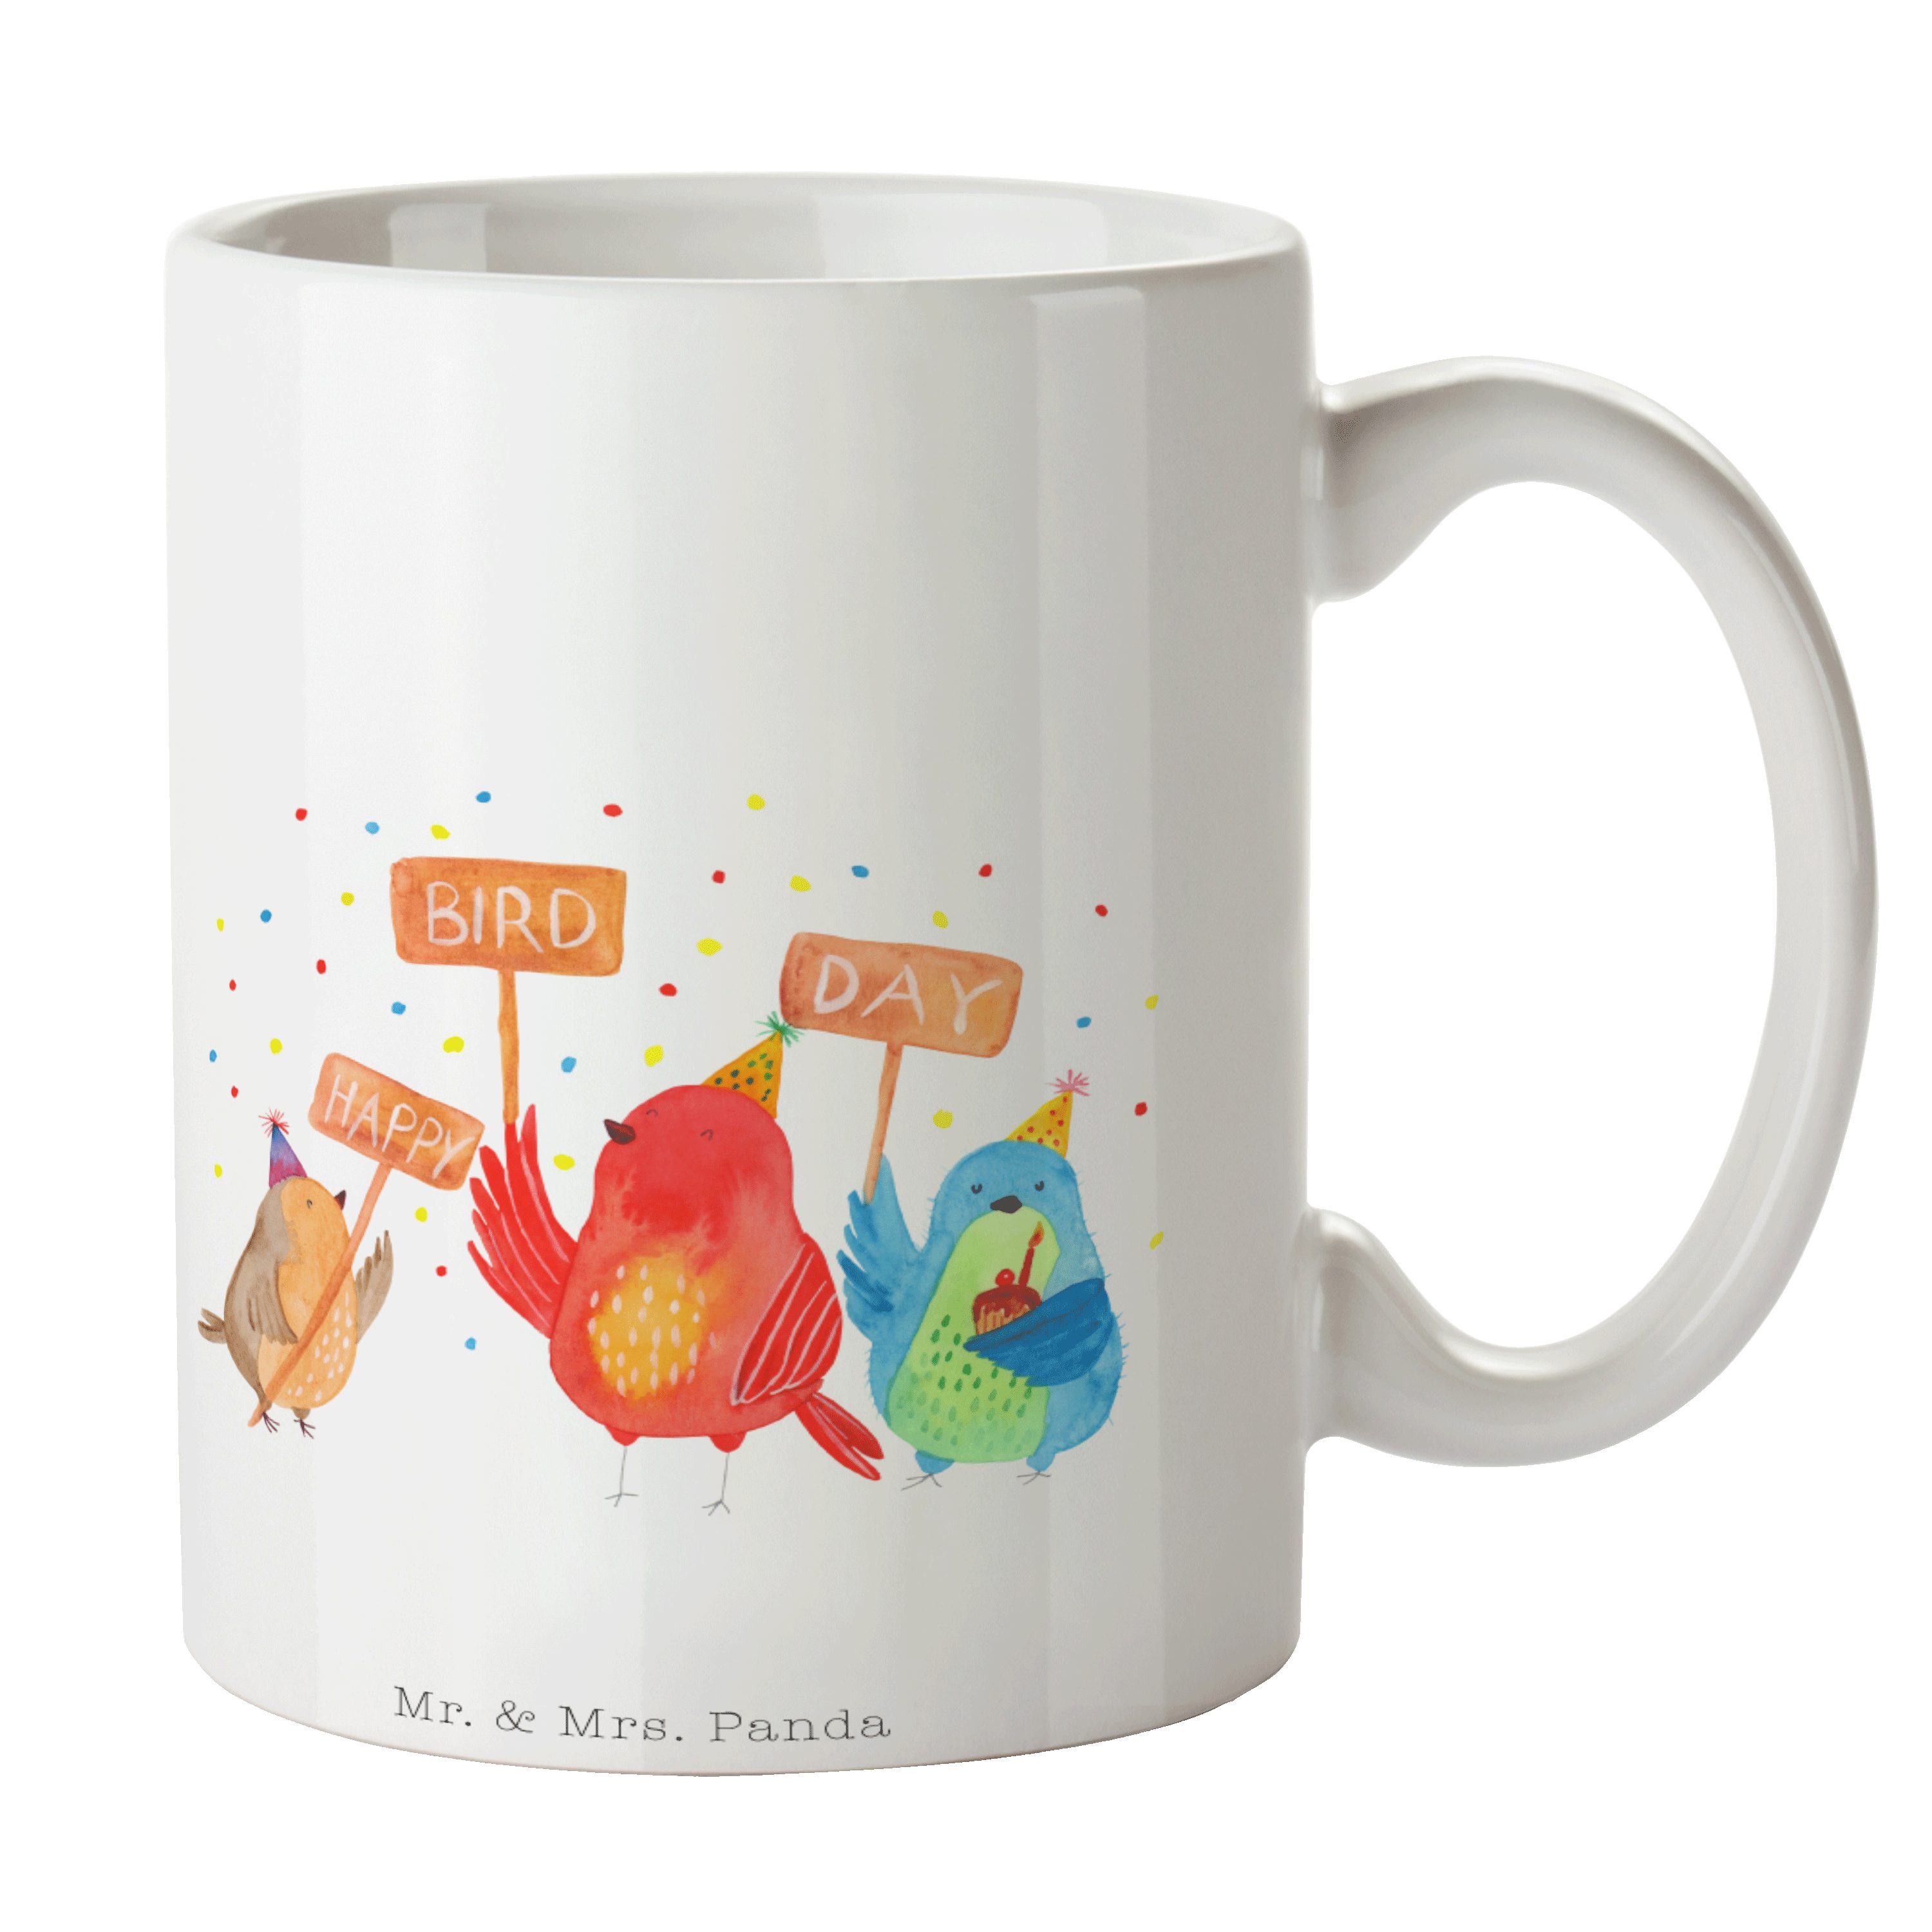 Mr. & Mrs. Panda Tasse Happy Birdday - Weiß - Geschenk, Vögel, Herzlichen Glückwunsch, Torte, Keramik